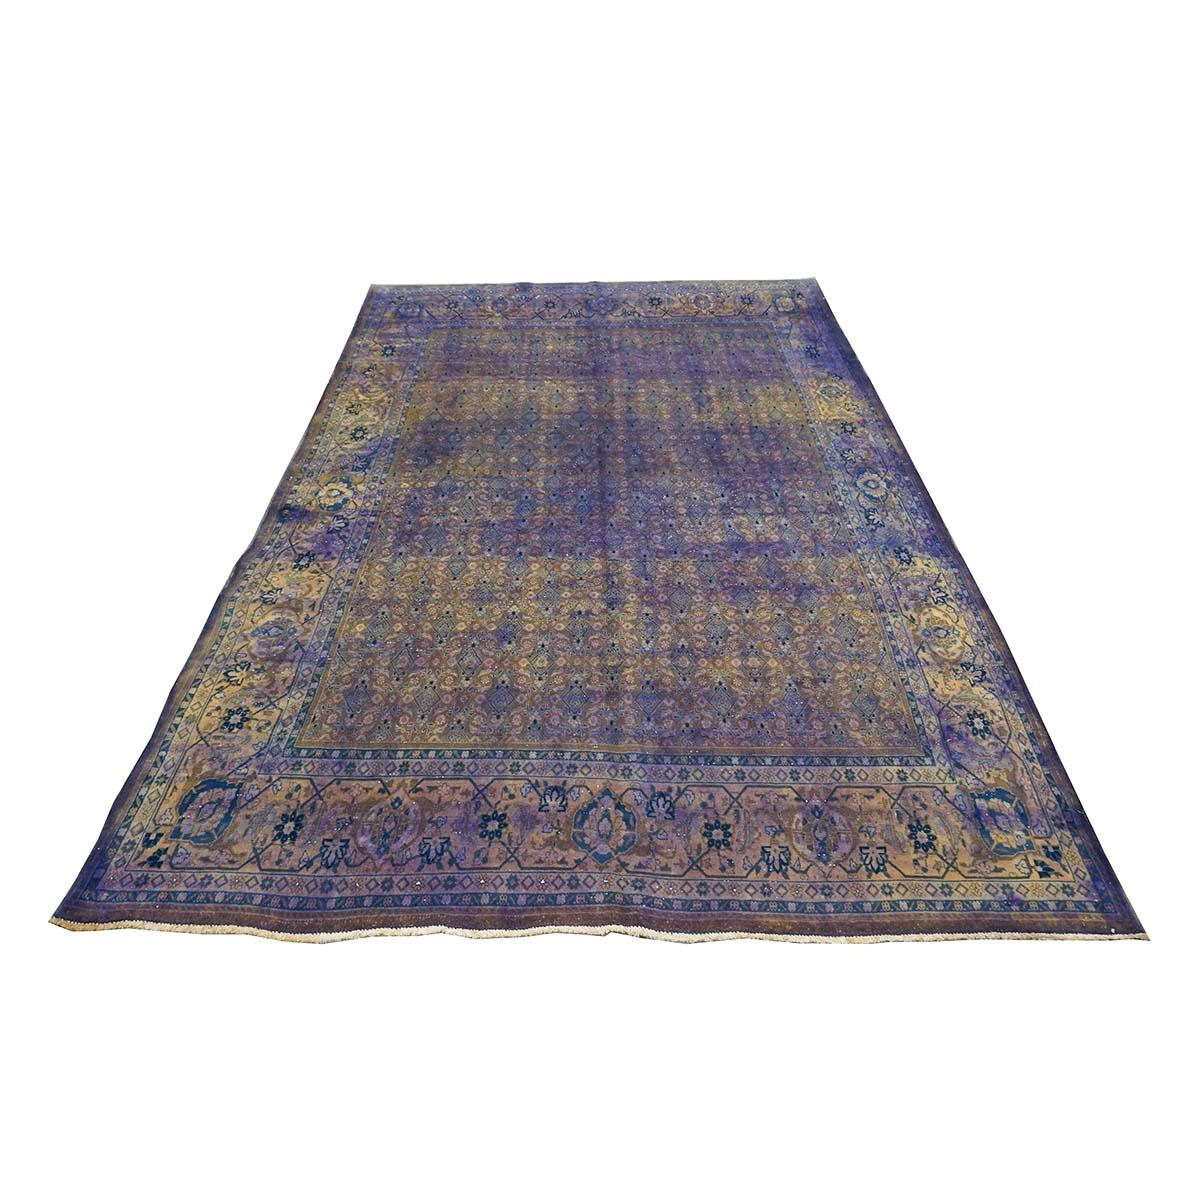  Ashly Fine Rugs présente un tapis Vintage Persan Mahal Modern Overdye 7x10 Purple fait à la main. Originaires de la région de Mahallat en Perse (Iran central), les tapis Mahal sont très recherchés par les décorateurs d'intérieur et les connaisseurs